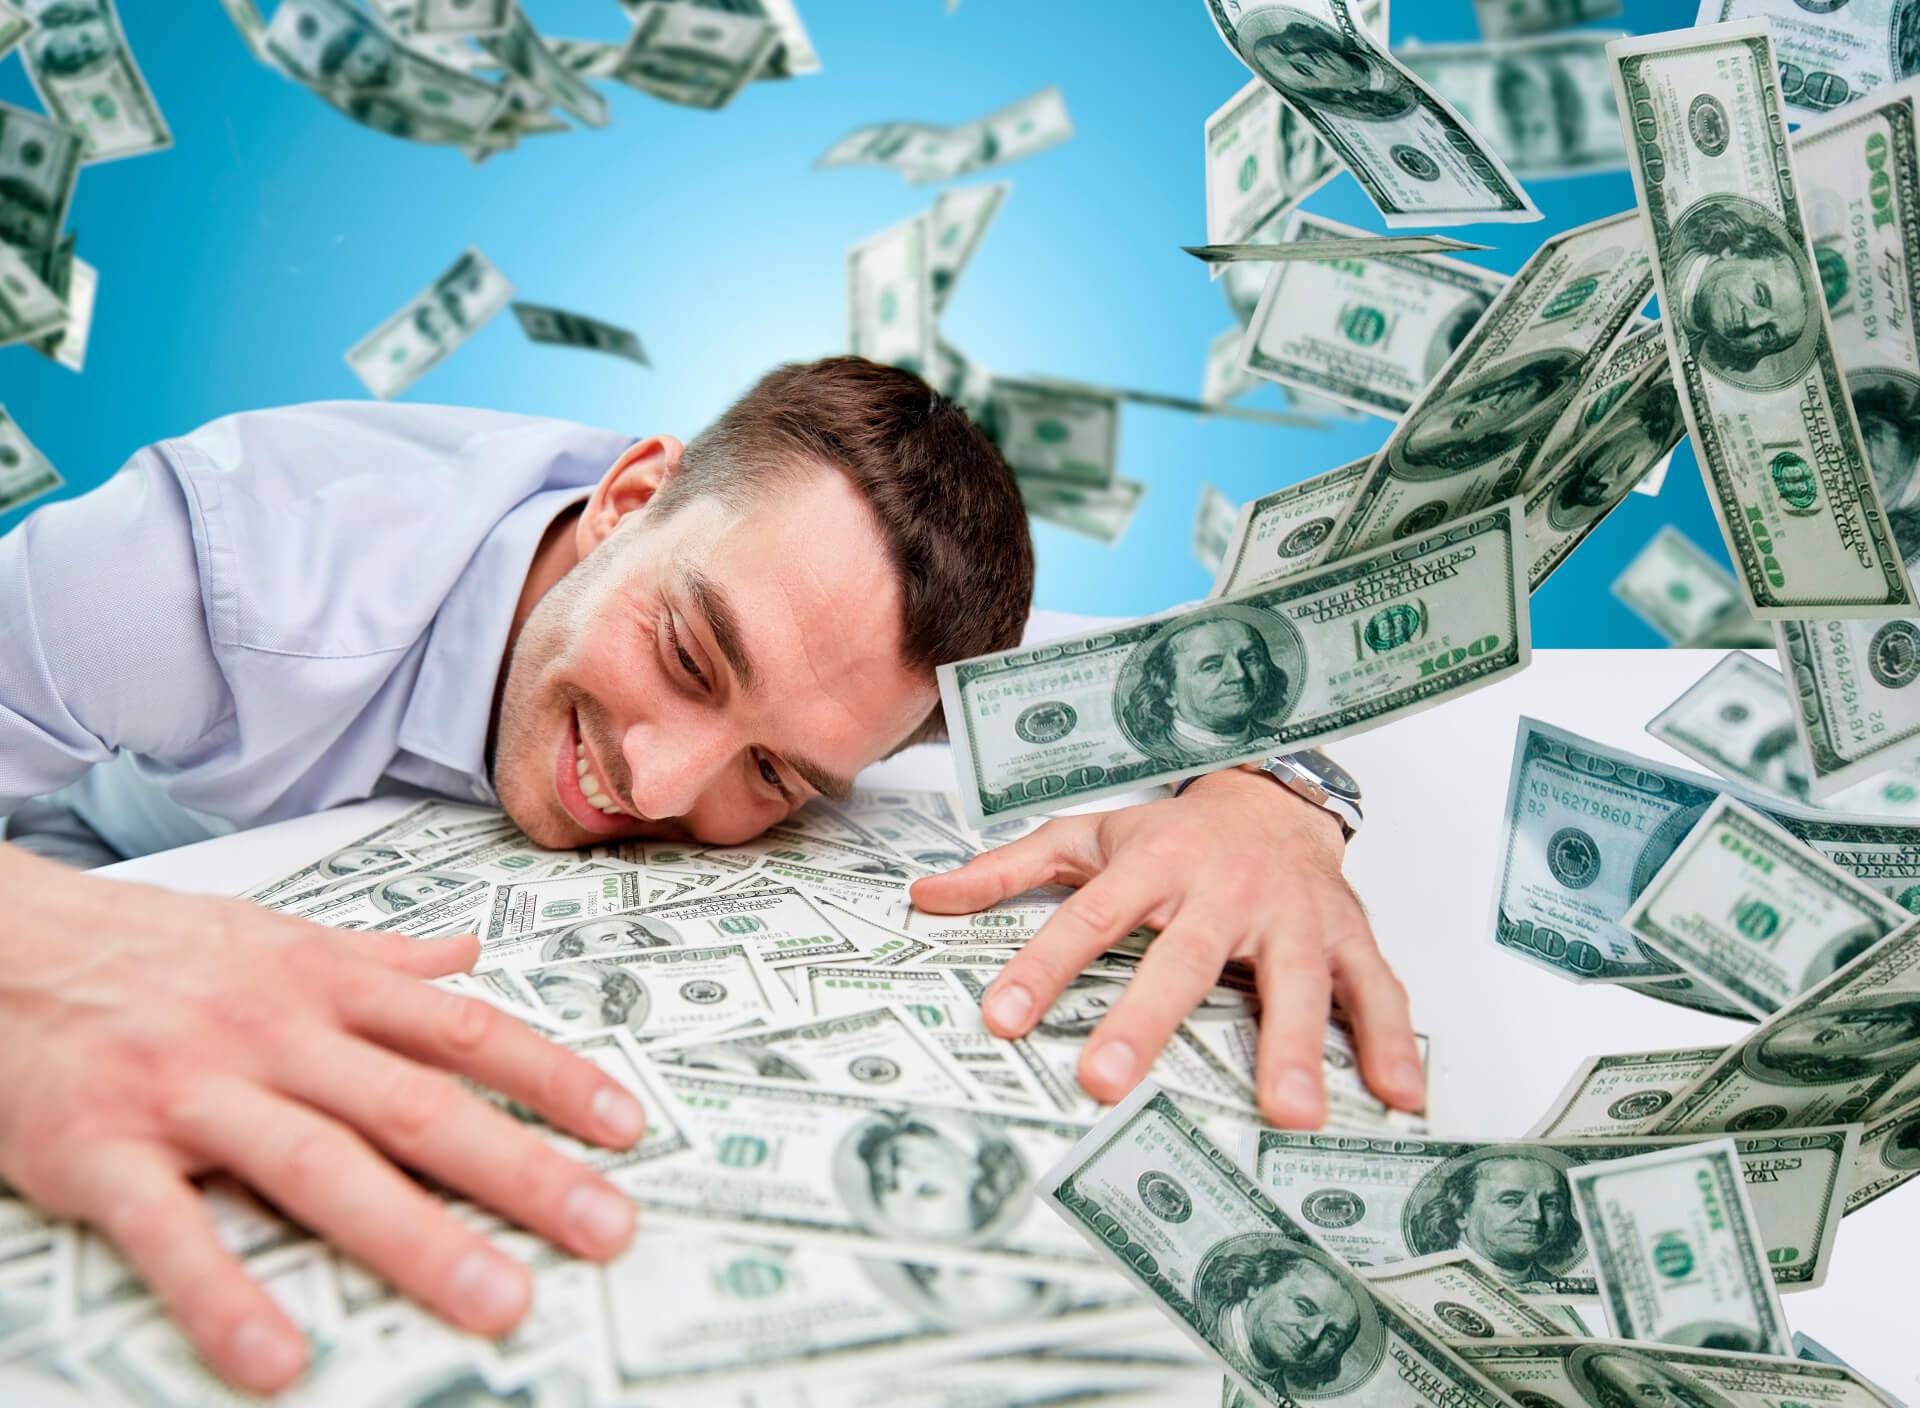 Счастье в деньгах или нет — 3 наблюдения про деньги и счастье